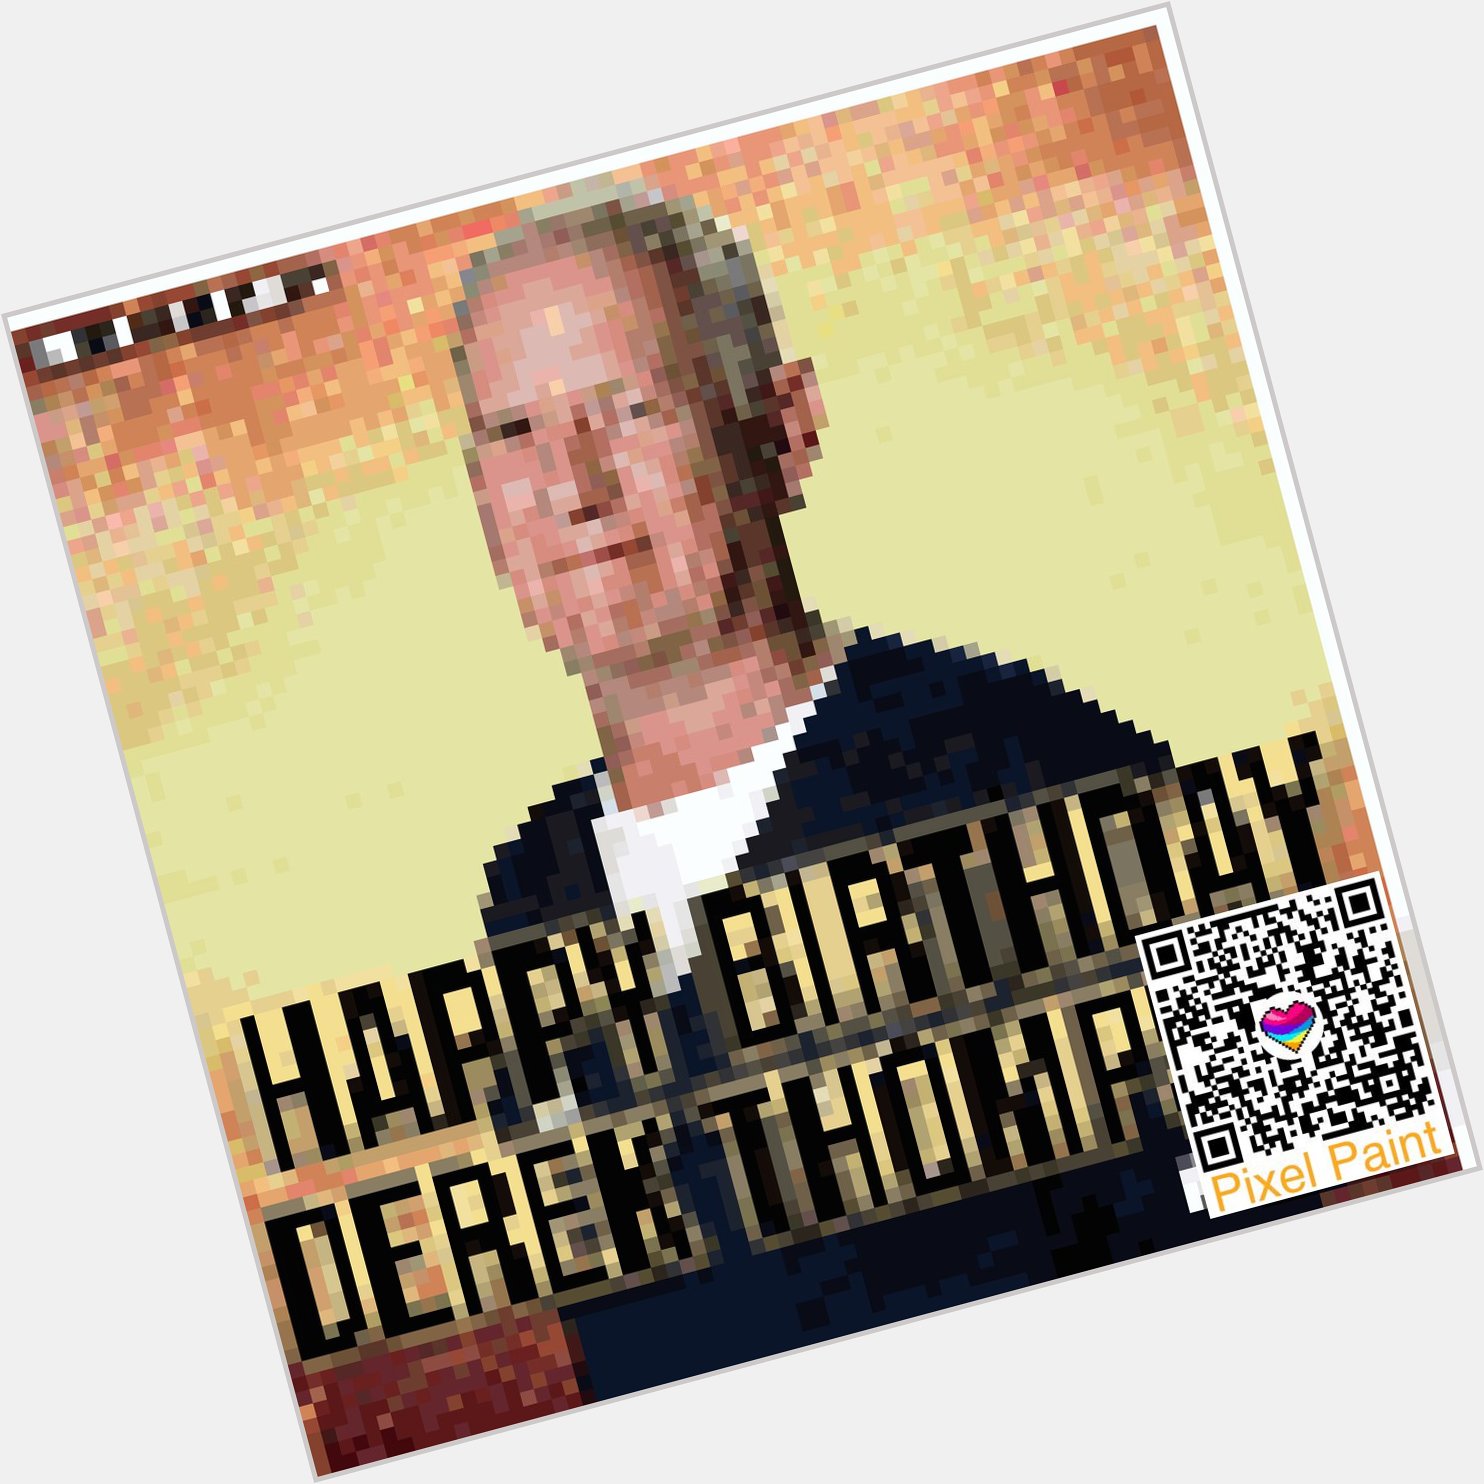 Happy Birthday Derek Thompson I hope you have a lovely day   Xx 